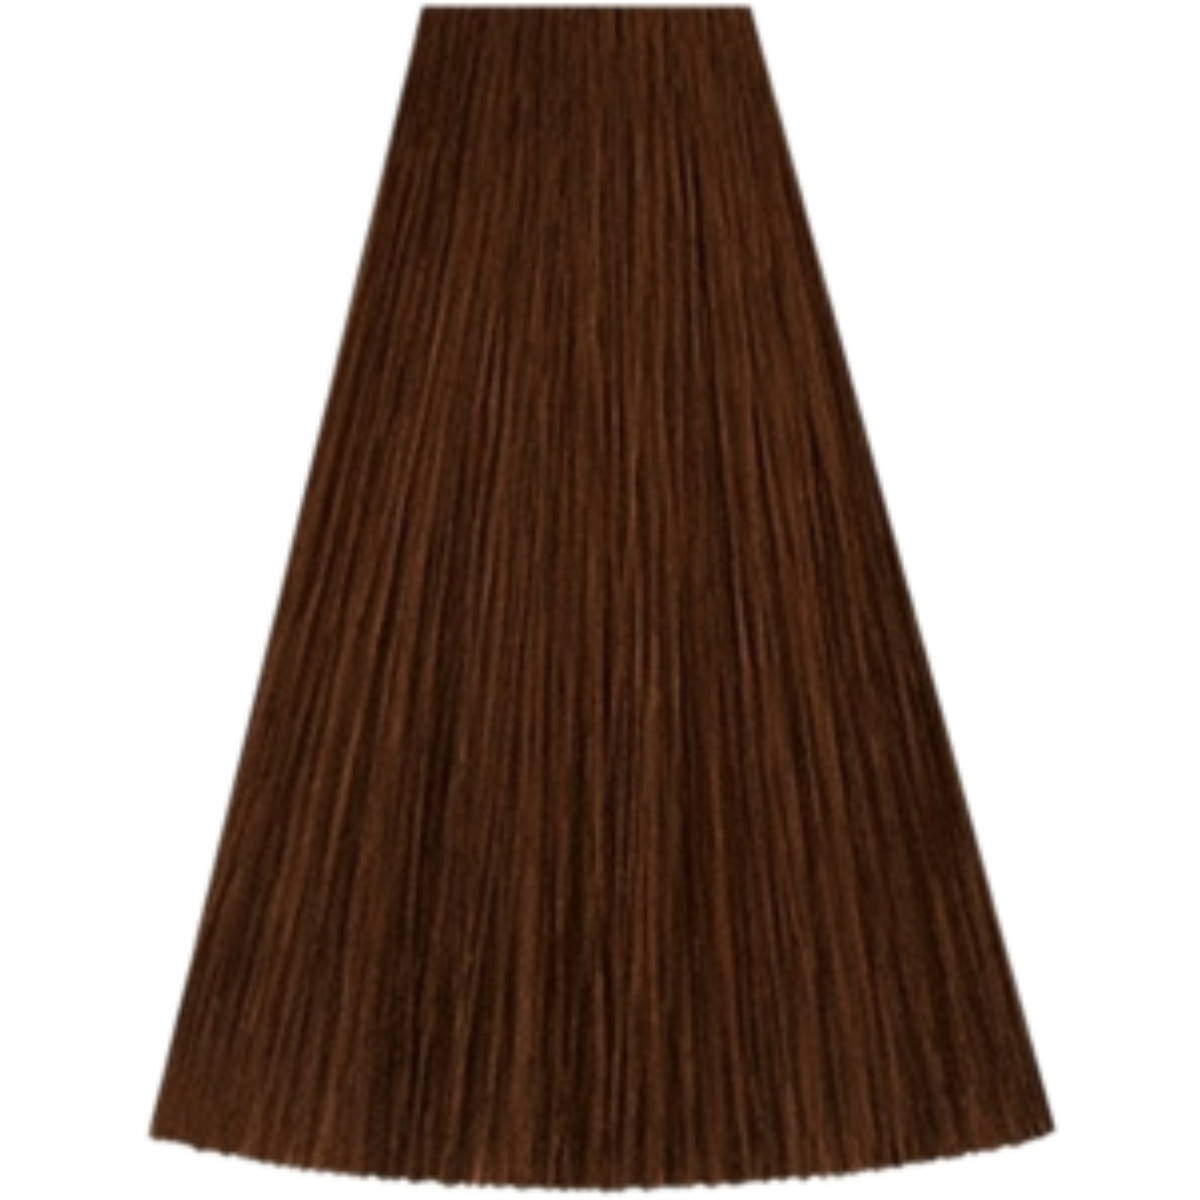 צבע שיער גוון 6/41 DARK BLONDE RED ASH קאדוס KADUS צבע לשיער 60 גרם